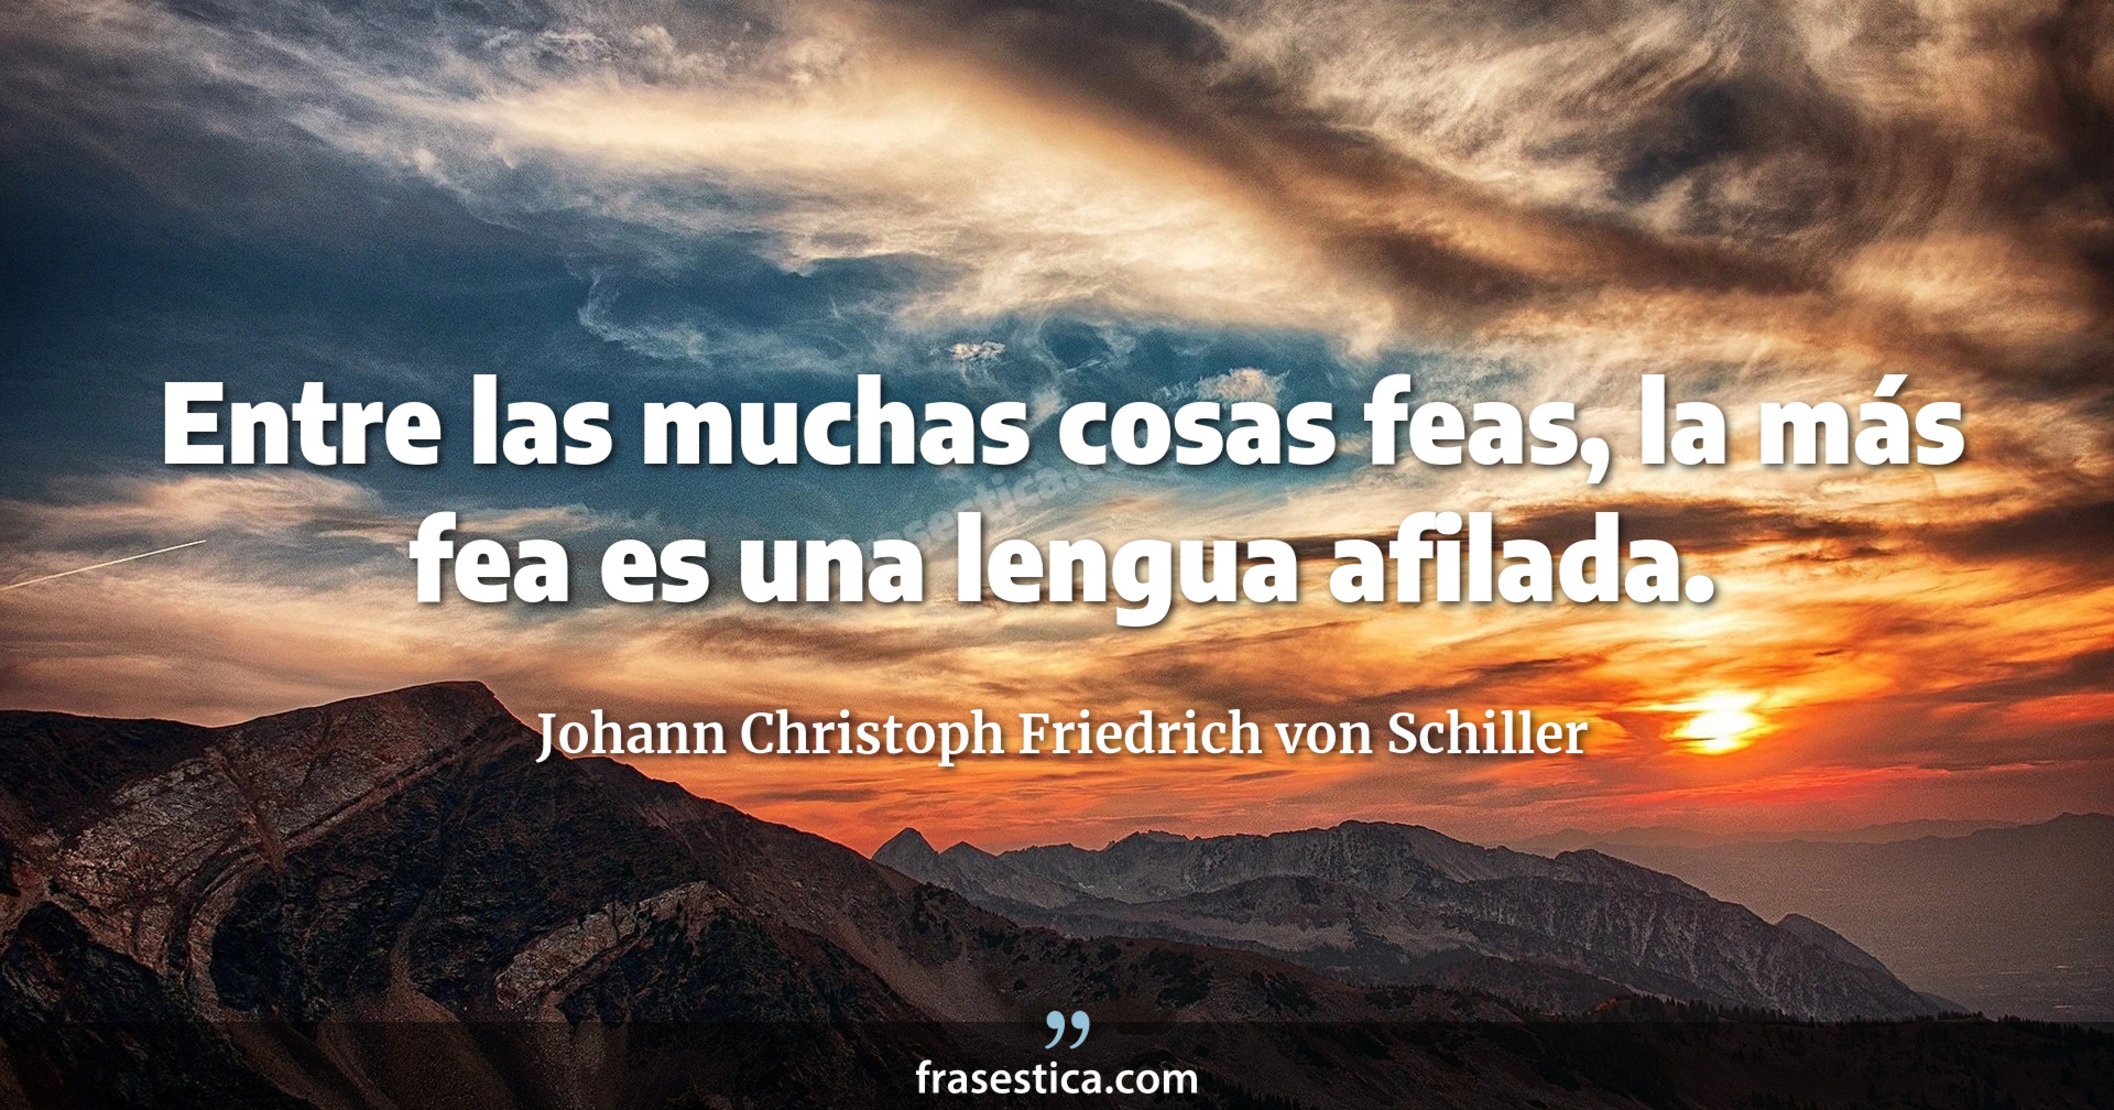 Entre las muchas cosas feas, la más fea es una lengua afilada. - Johann Christoph Friedrich von Schiller